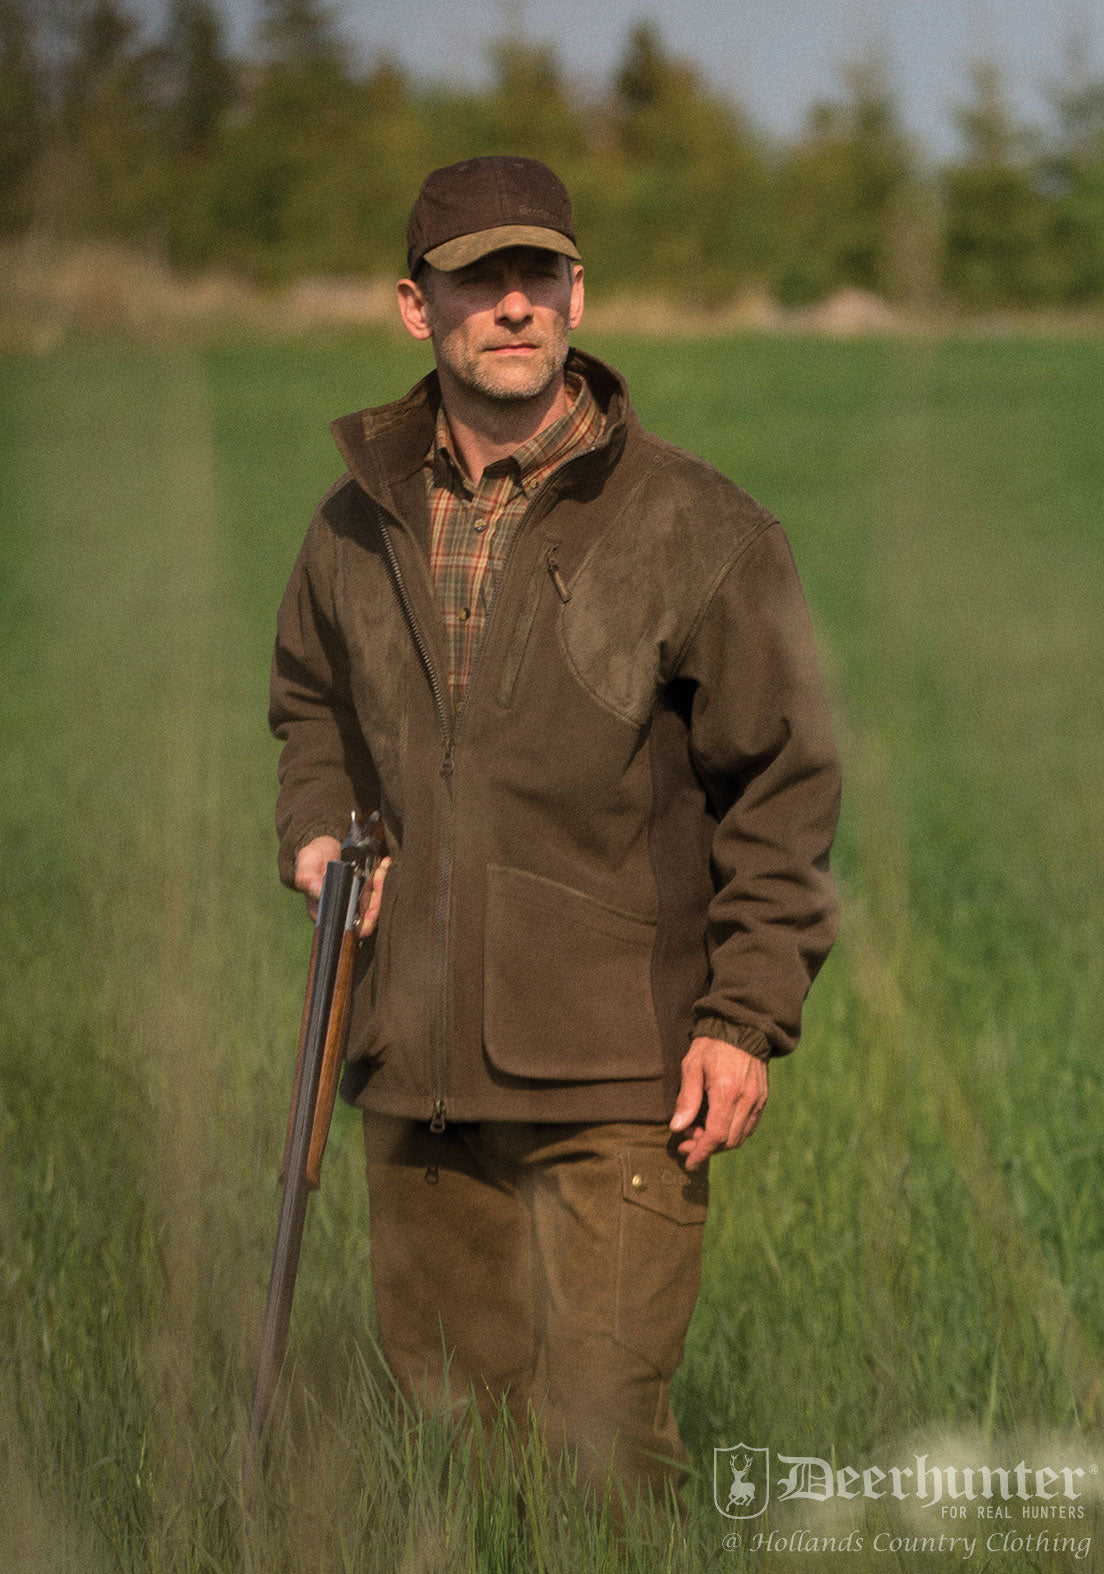 Deerhunter Gamekeeper Shooting Jacket - Hollands Country Clothing